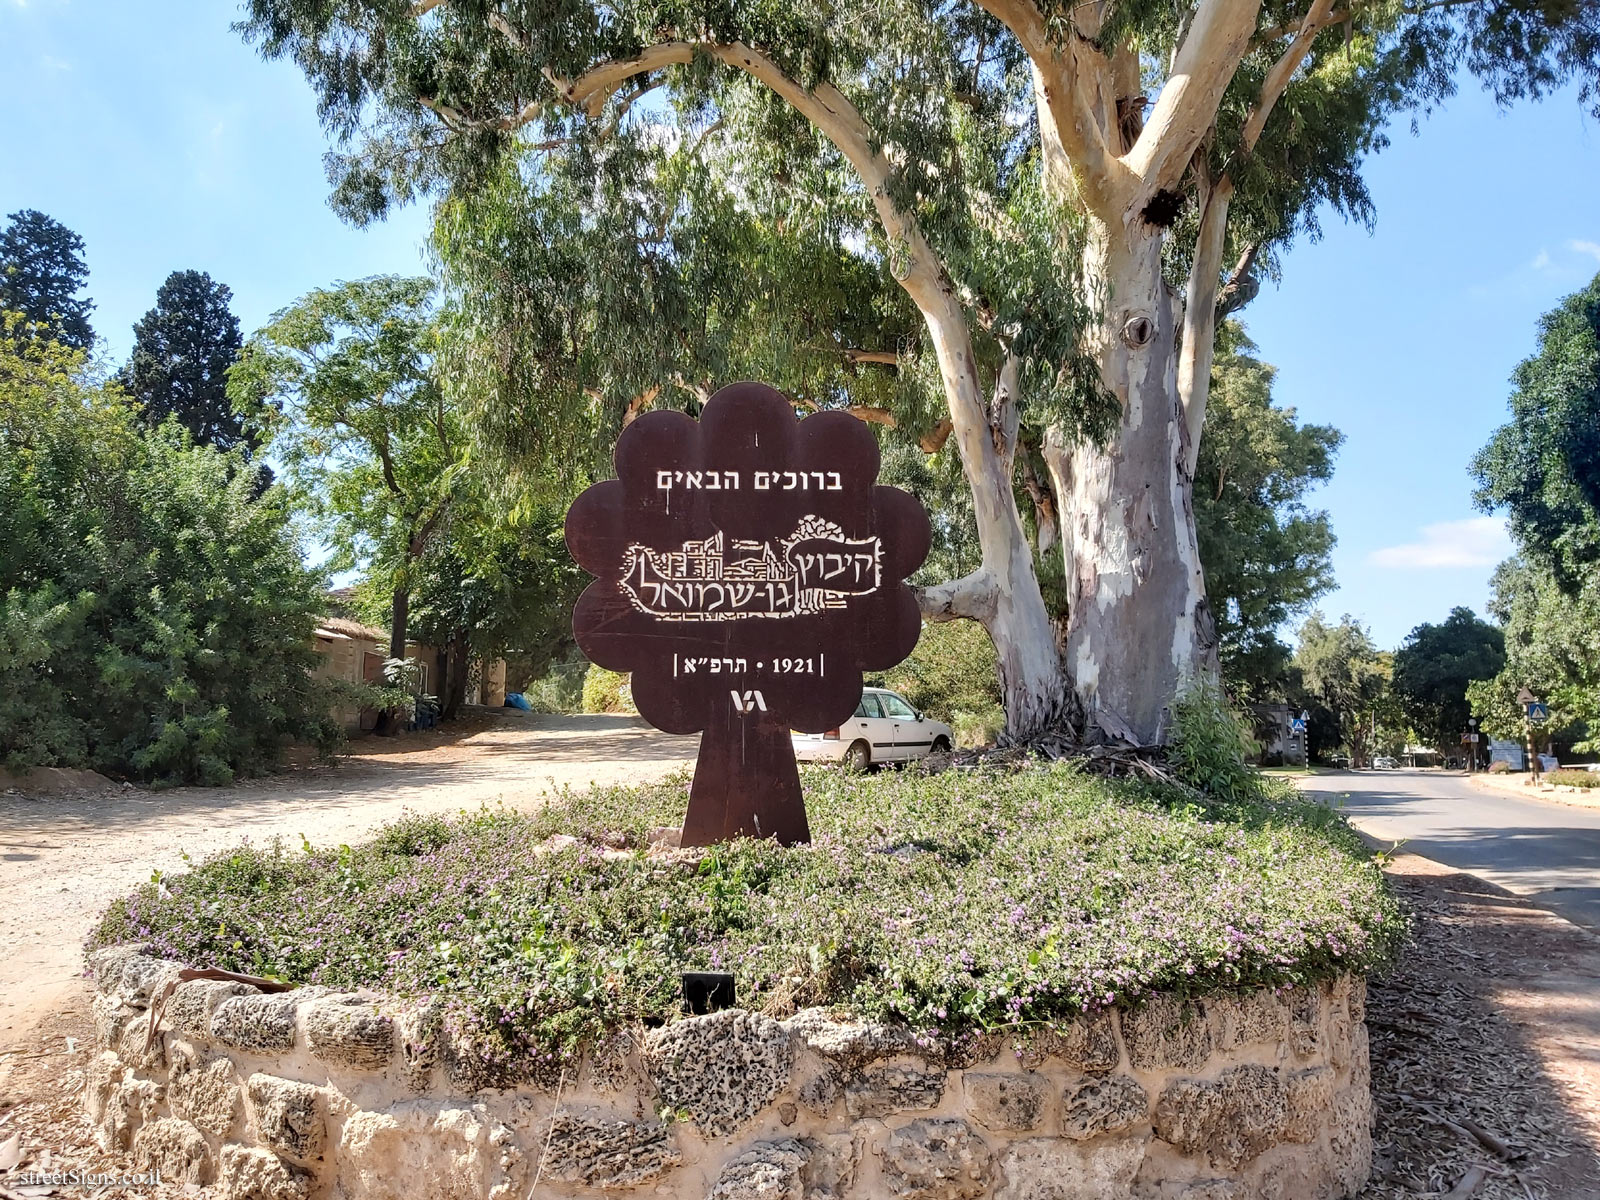 Kibbutz Gan Shmuel - the sign of the Kibbutz